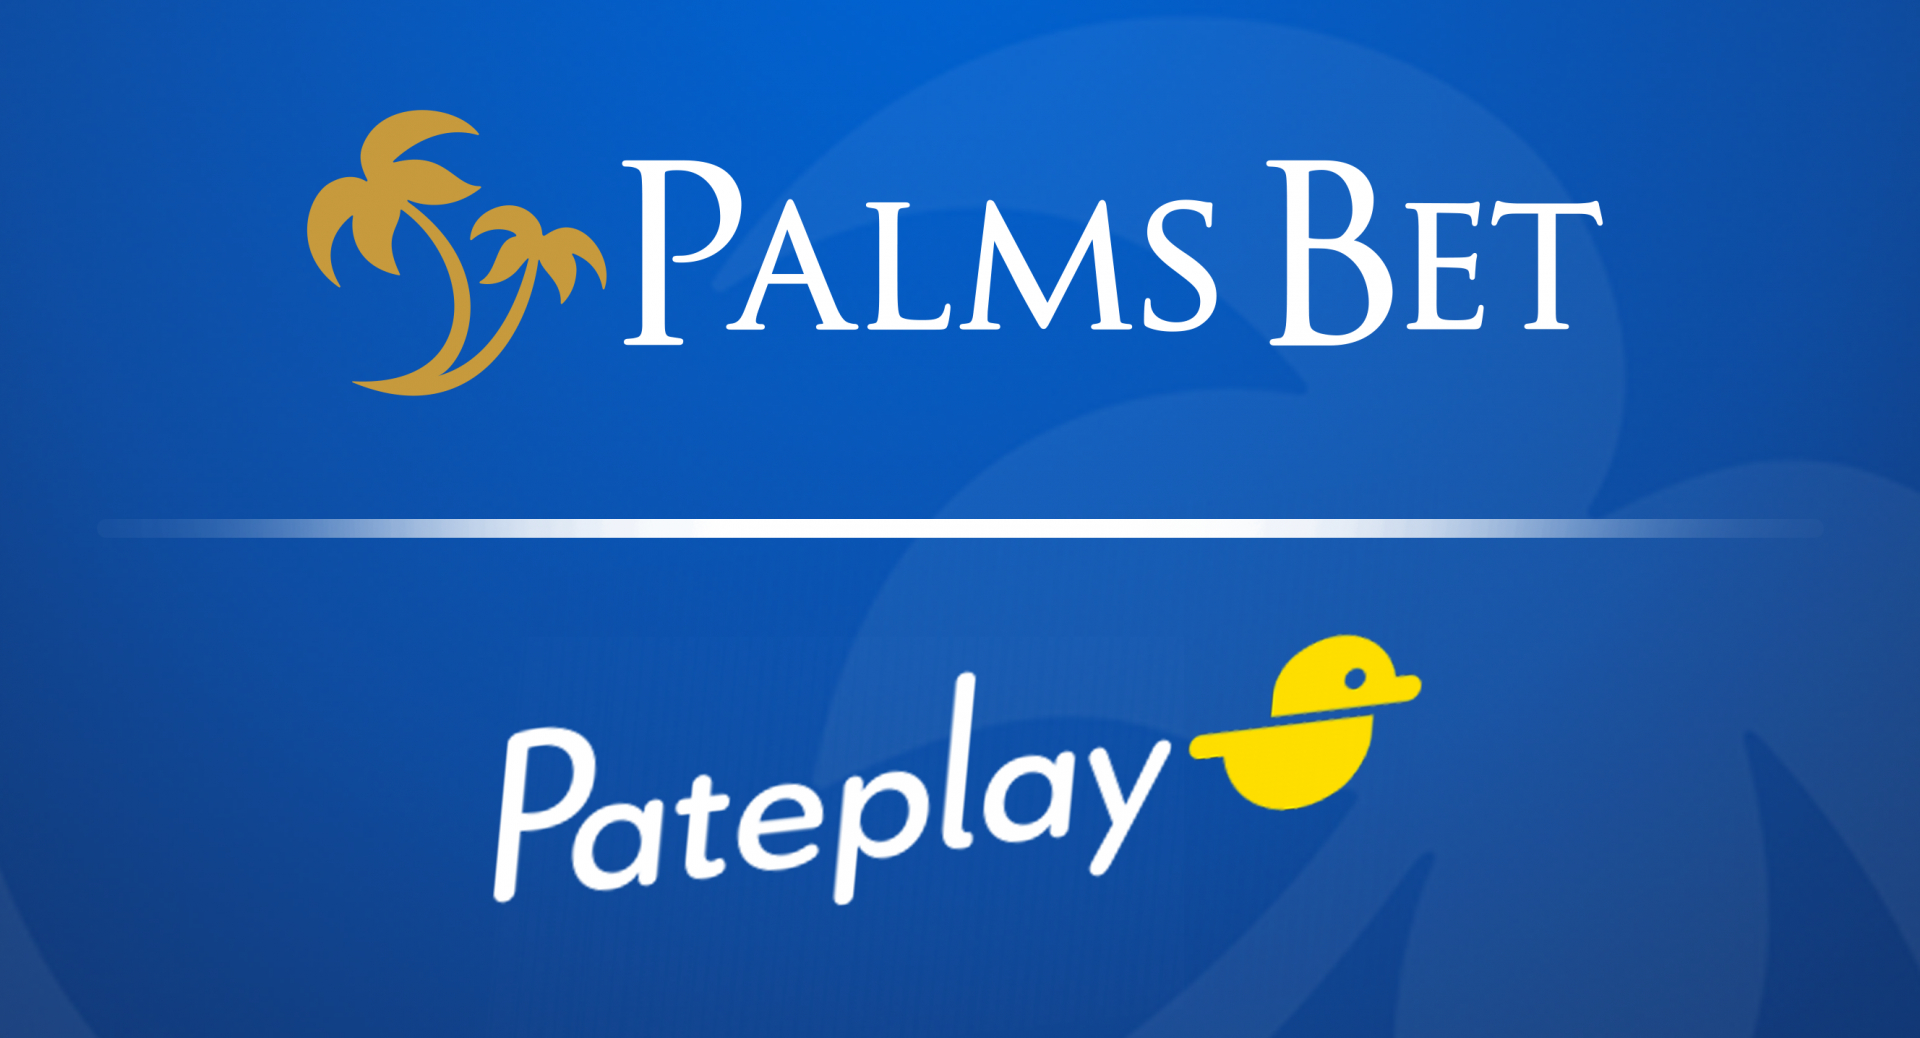 Palms Bet с ексклузивни нови игри от Pateplay